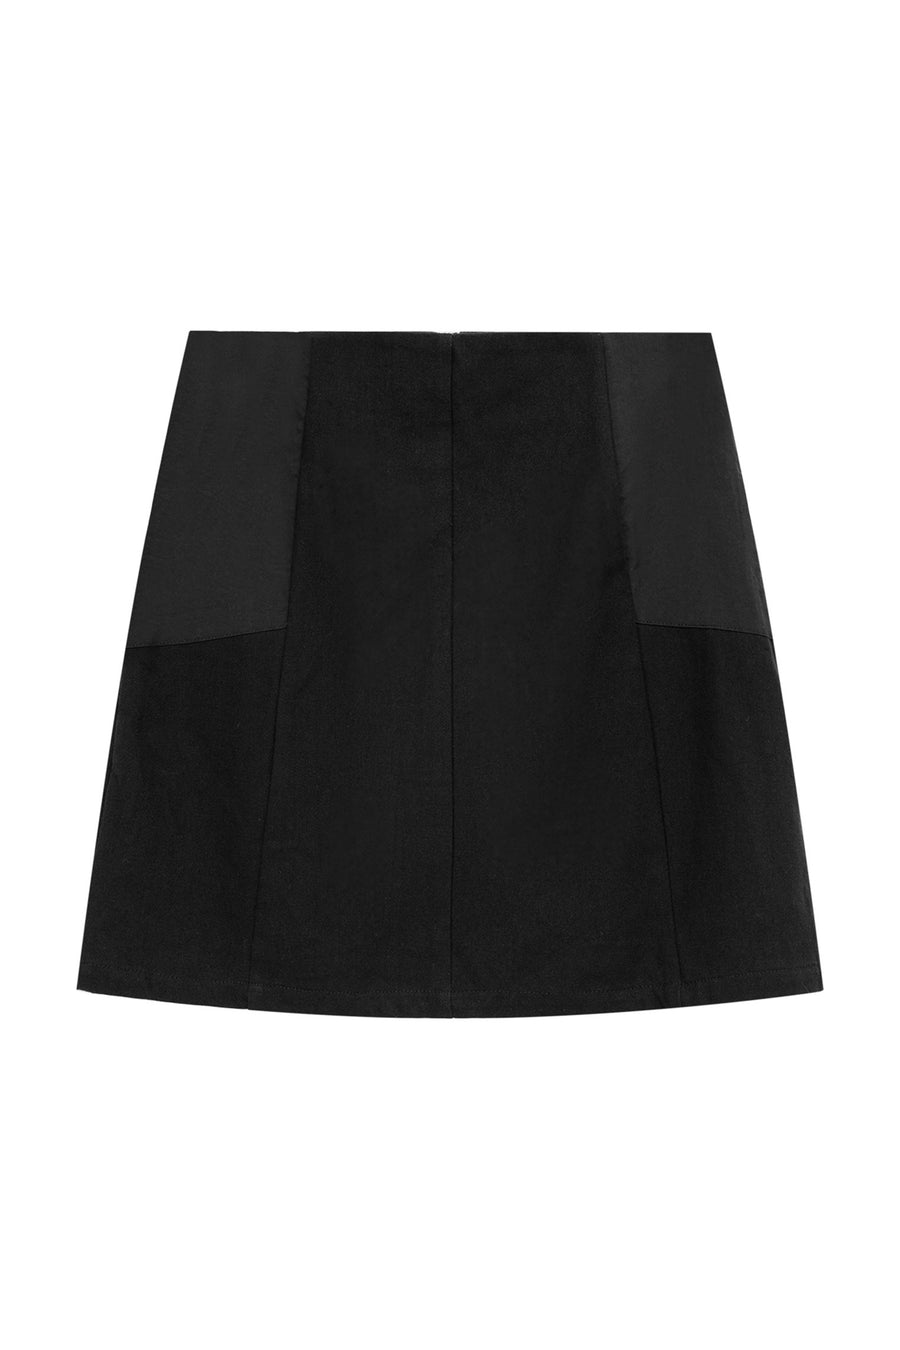 CHUU Basic A-Line Skirt